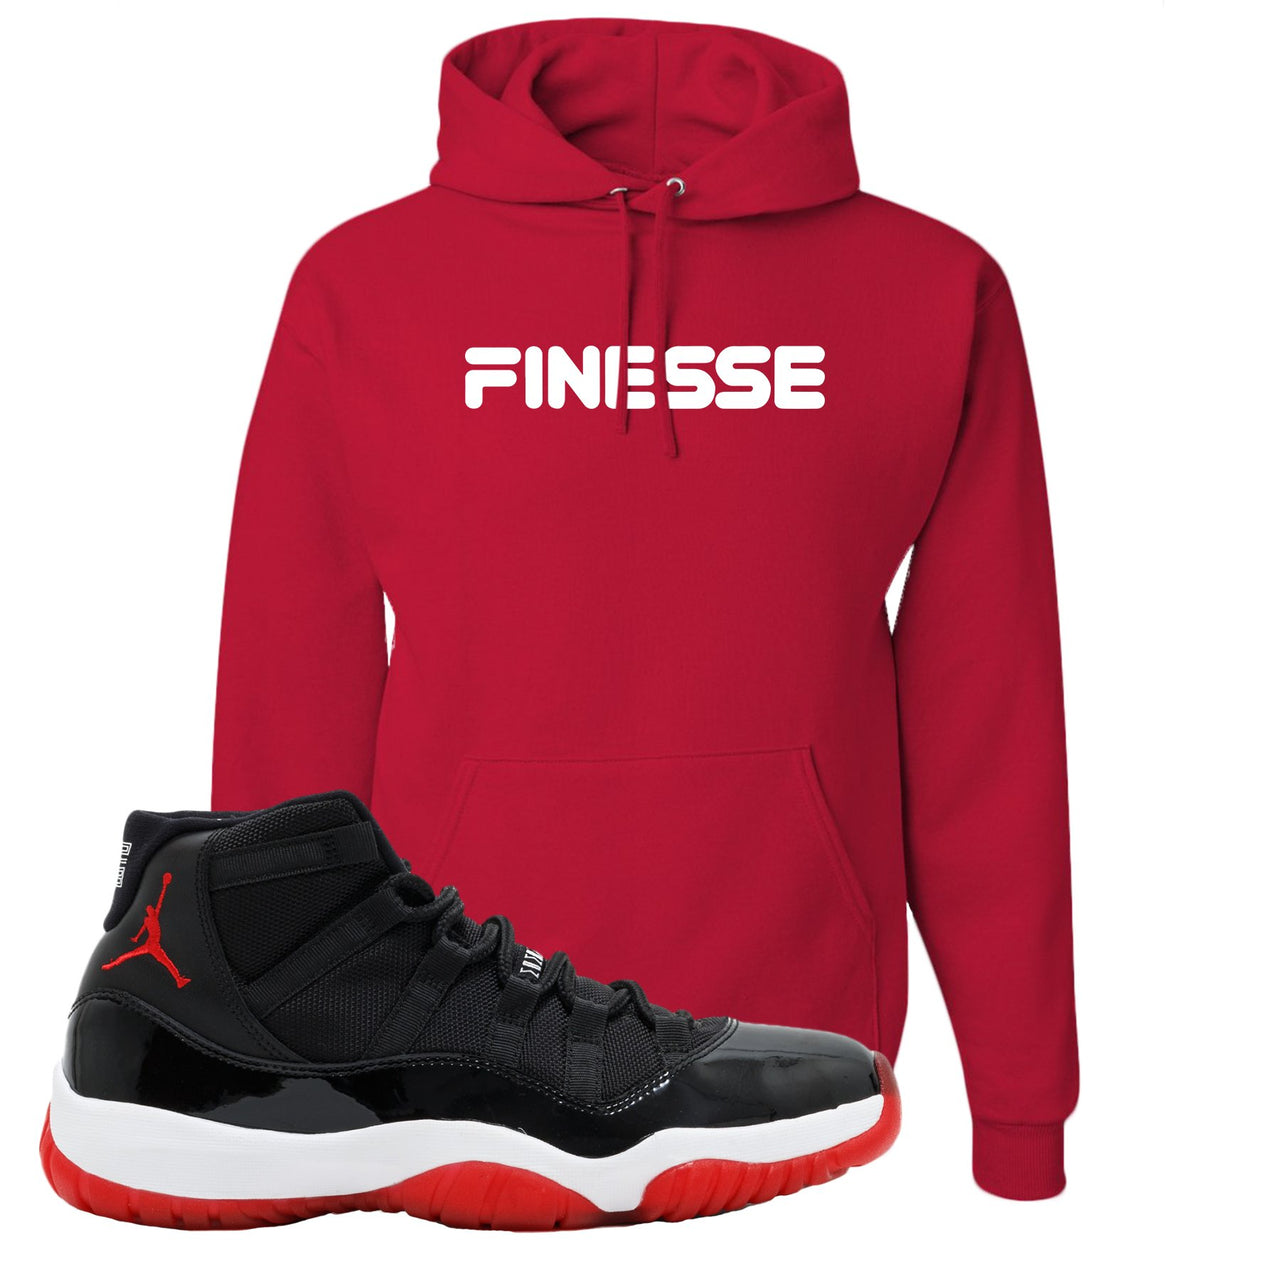 Jordan 11 Bred Finesse Red Sneaker Hook Up Pullover Hoodie